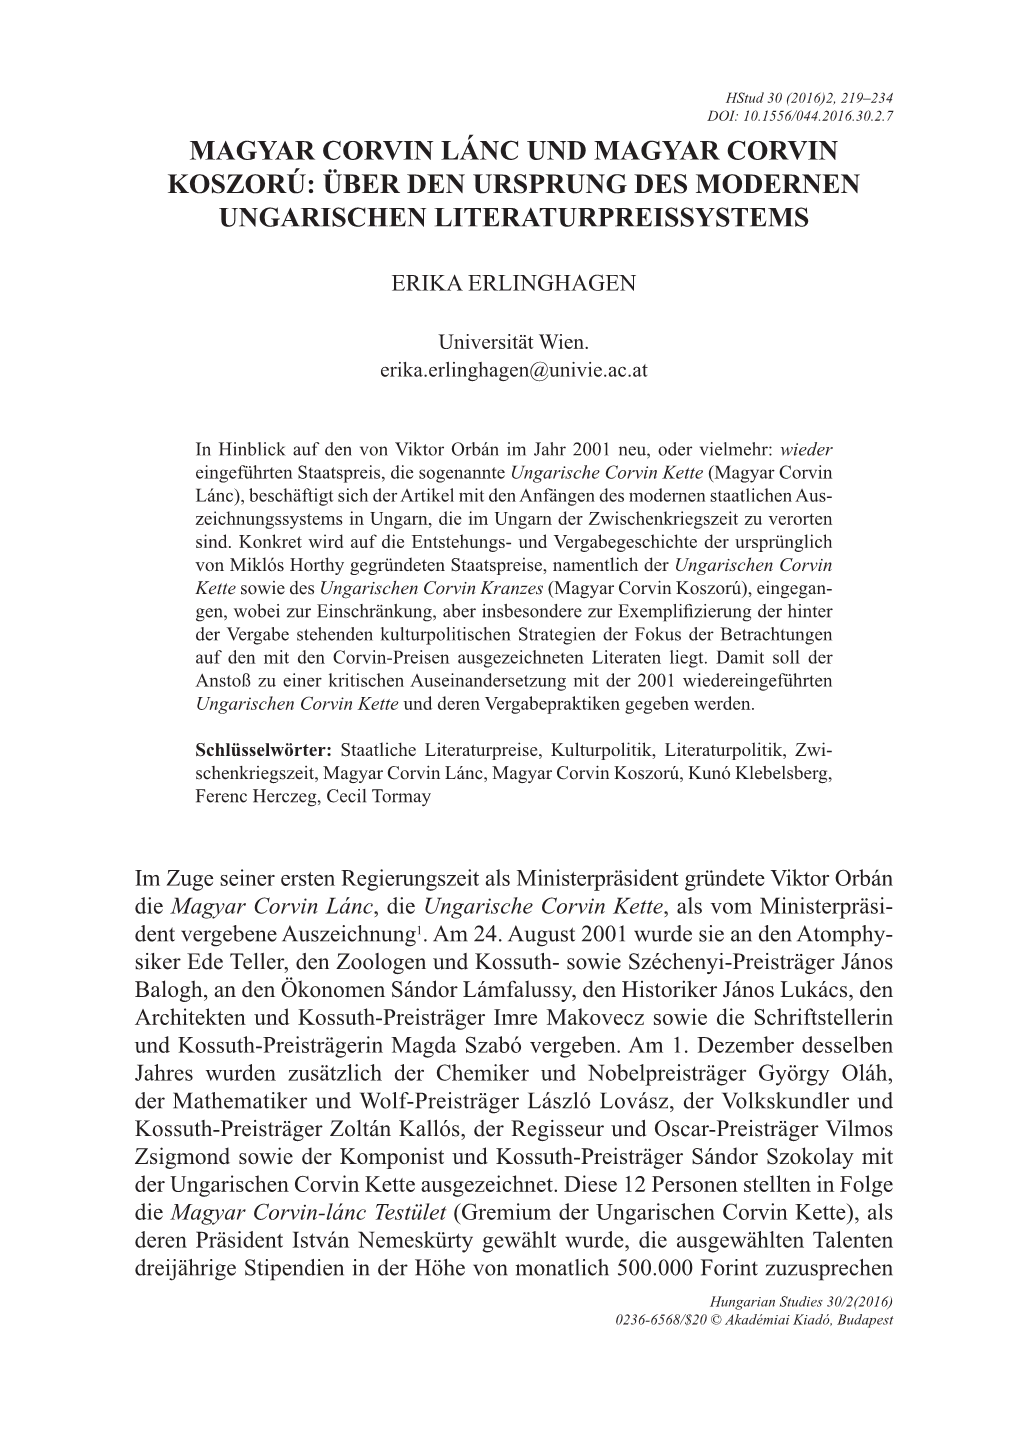 Hungarian Studies 30/2(2016) 0236-6568/$20 © Akadémiai Kiadó, Budapest